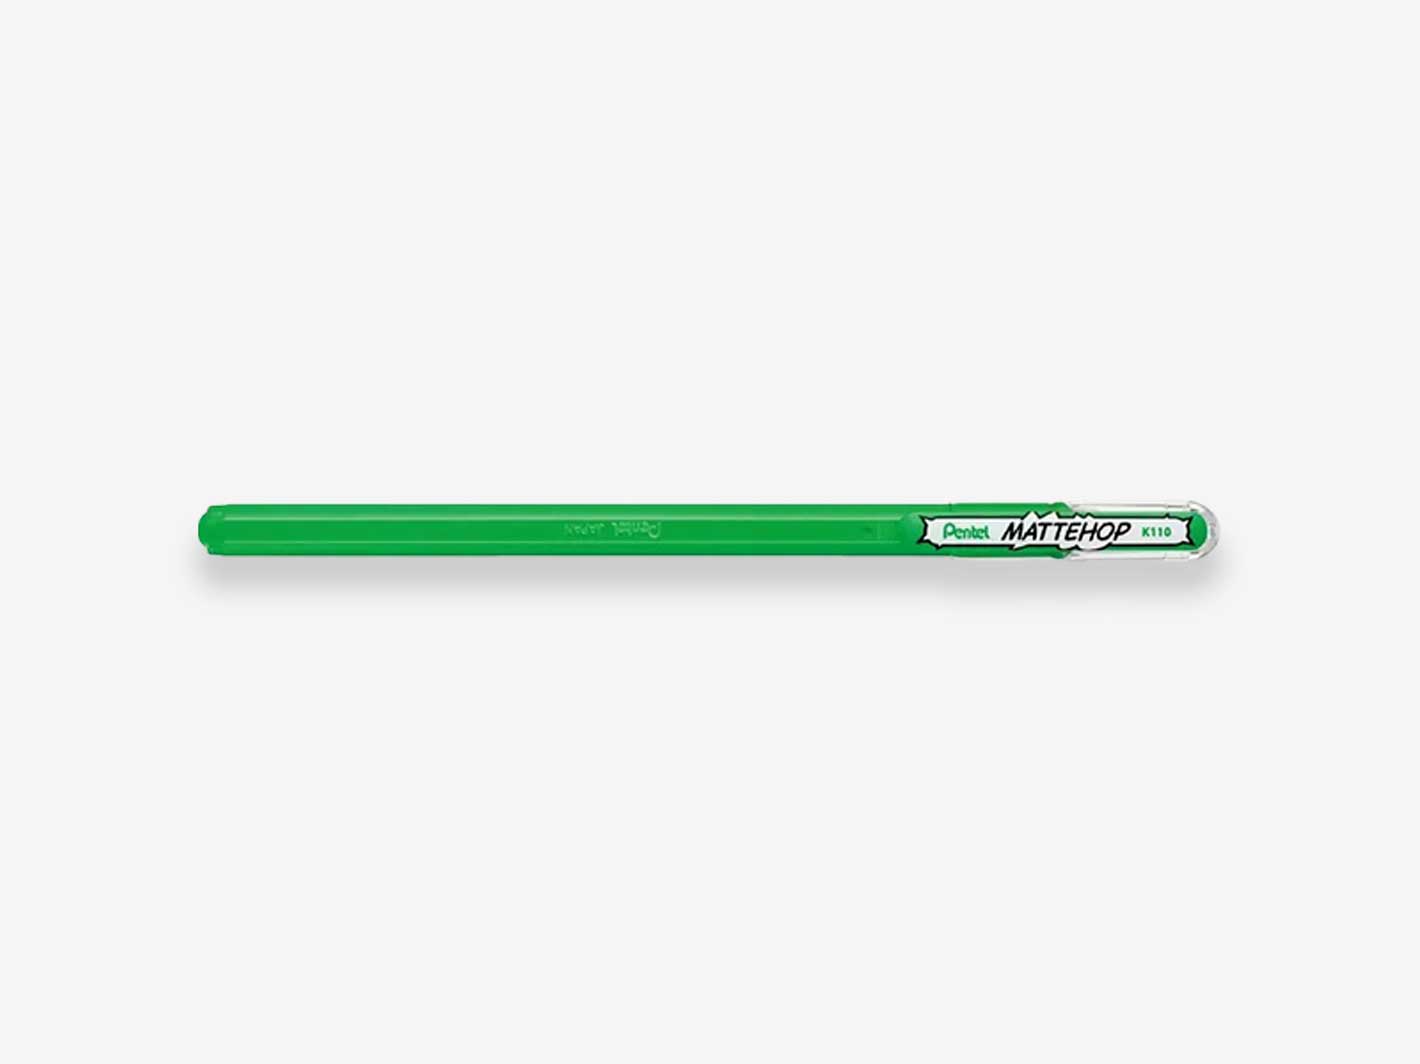 Mattehop Ballpoint Pen Green 1.0